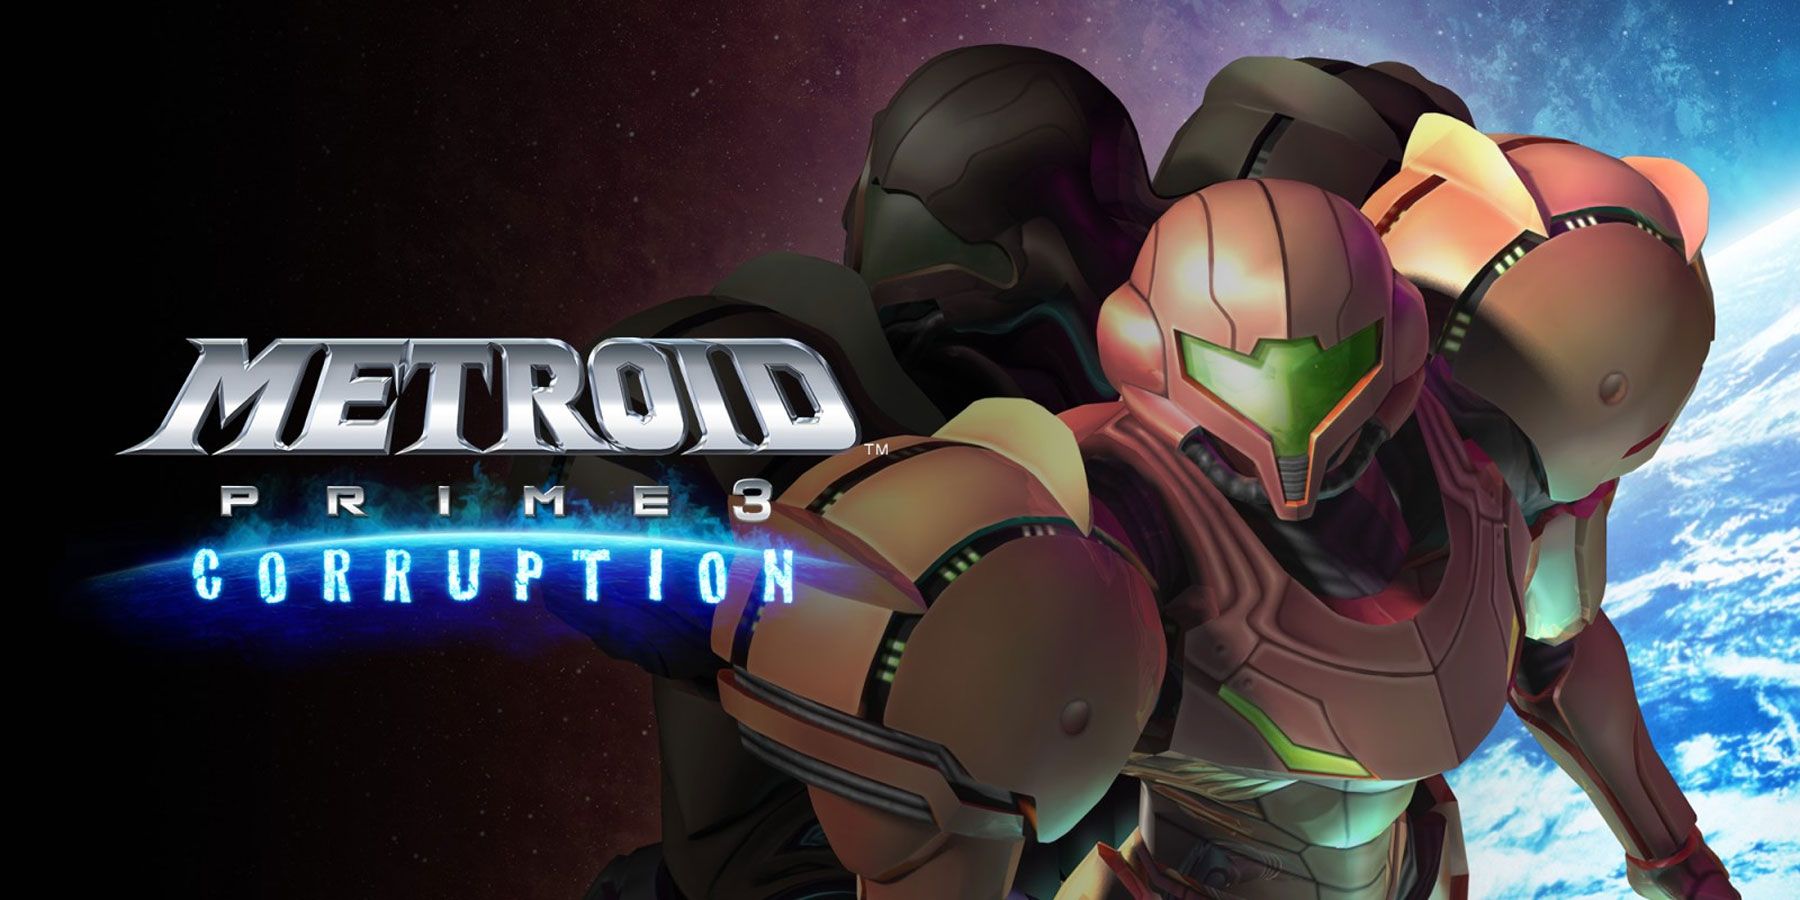 Metroid Prime 3 lanserades ursprungligen som ett Open-World-spel